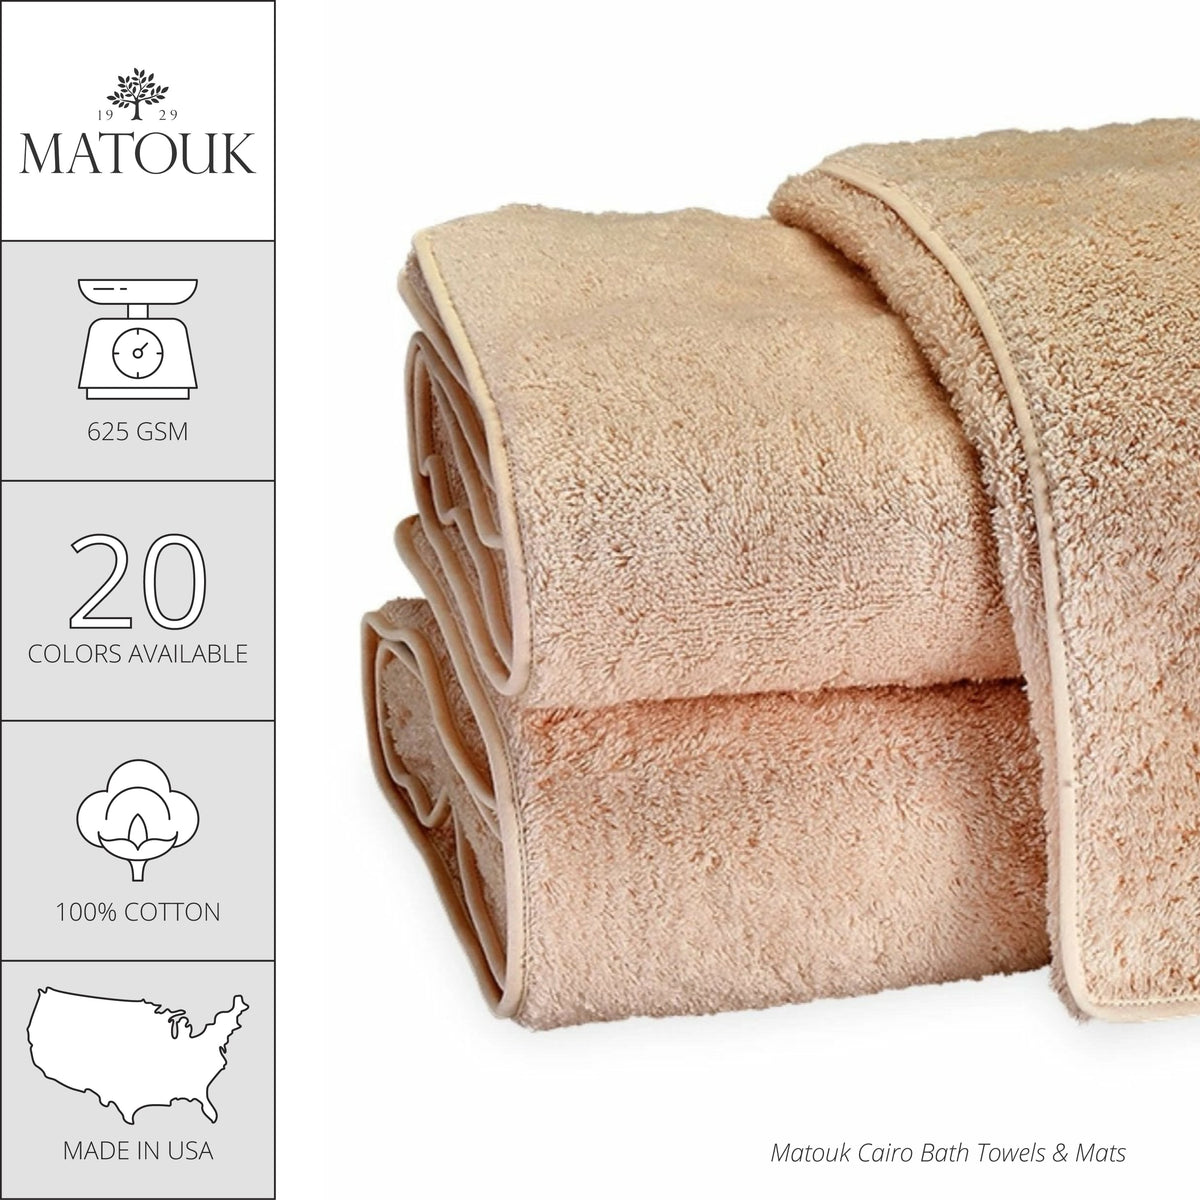 Matouk Cairo Bath Towels and Mats - White/Smoke Gray